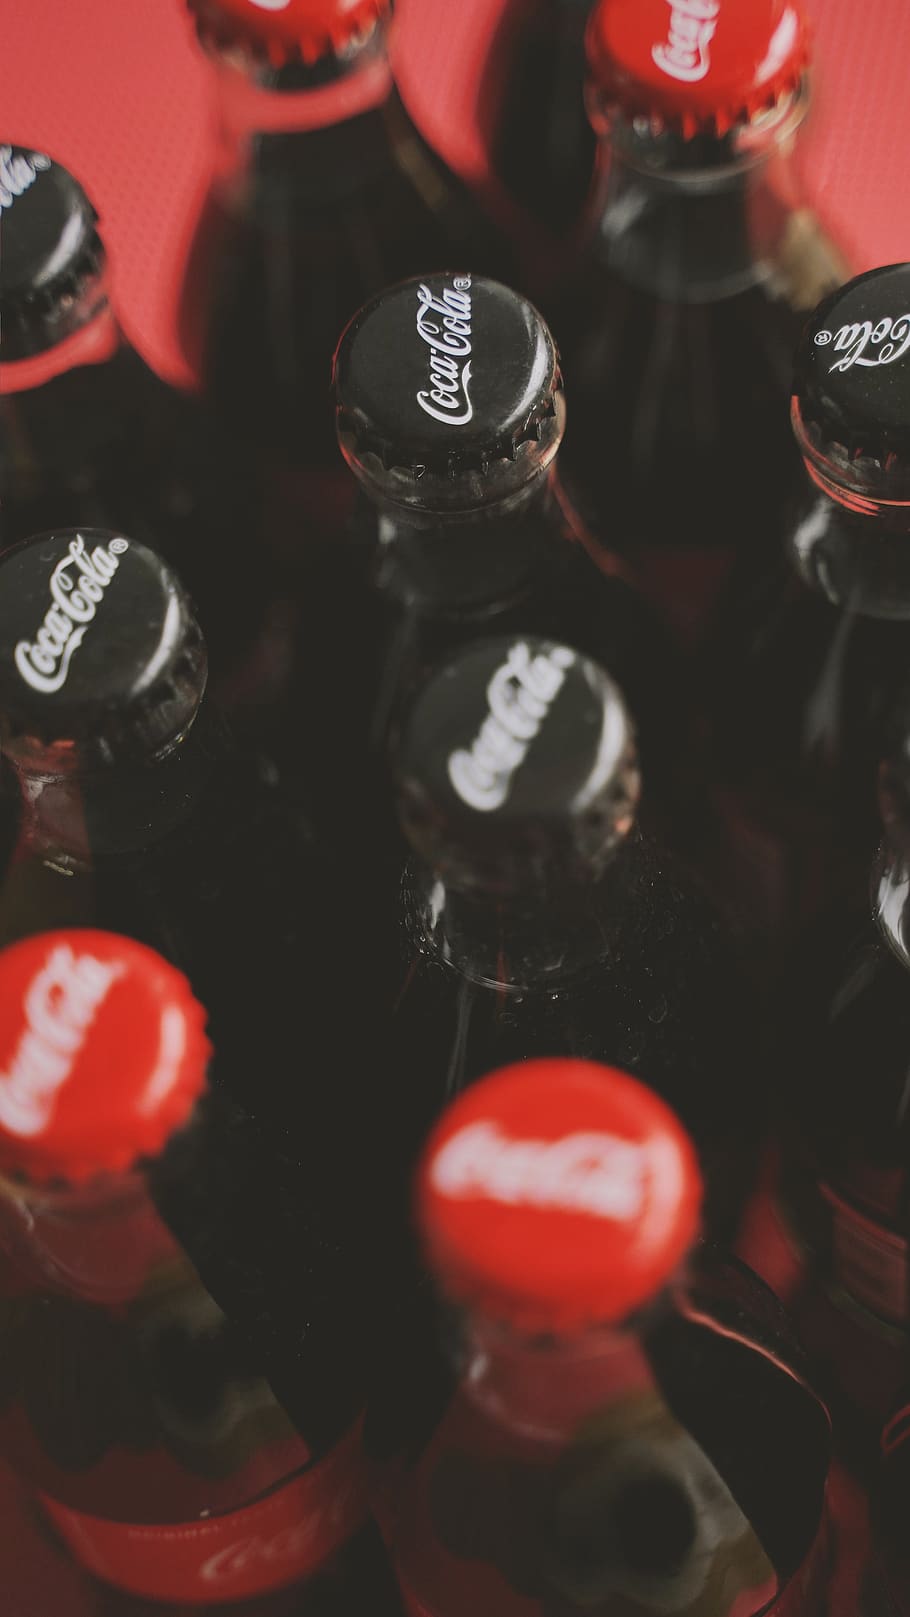 Coca-Cola soda bottles, drink, beverage, pop bottle, coke, alcohol